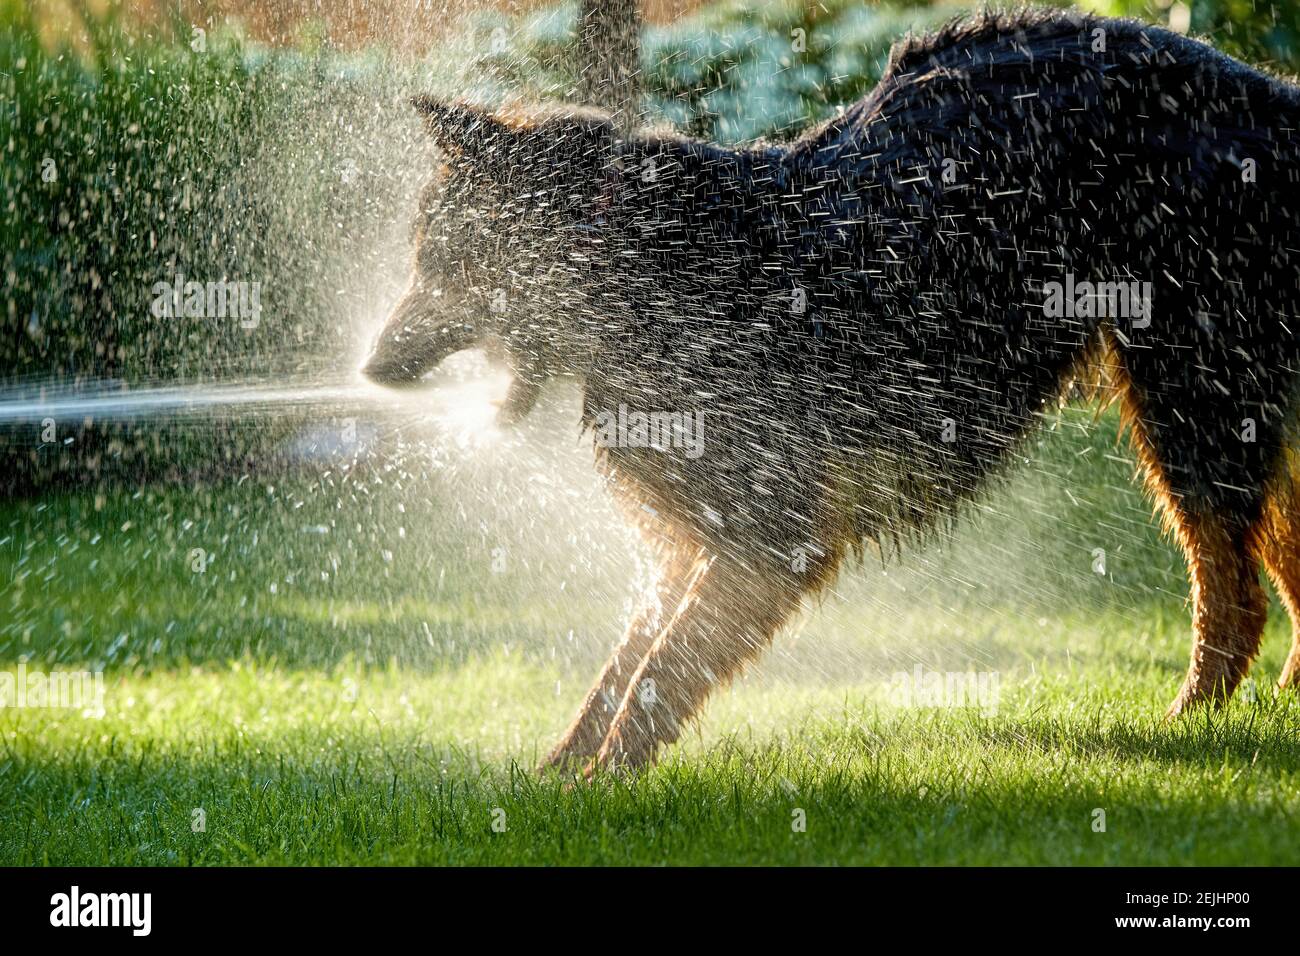 Böhmischer Schäferhund, haariger Hund, der im Garten mit Wasserbach spielt, überall Wasser spritzt. Foto mit Hintergrundbeleuchtung, sonniger Tag. Familienhundeaktivitäten. Stockfoto